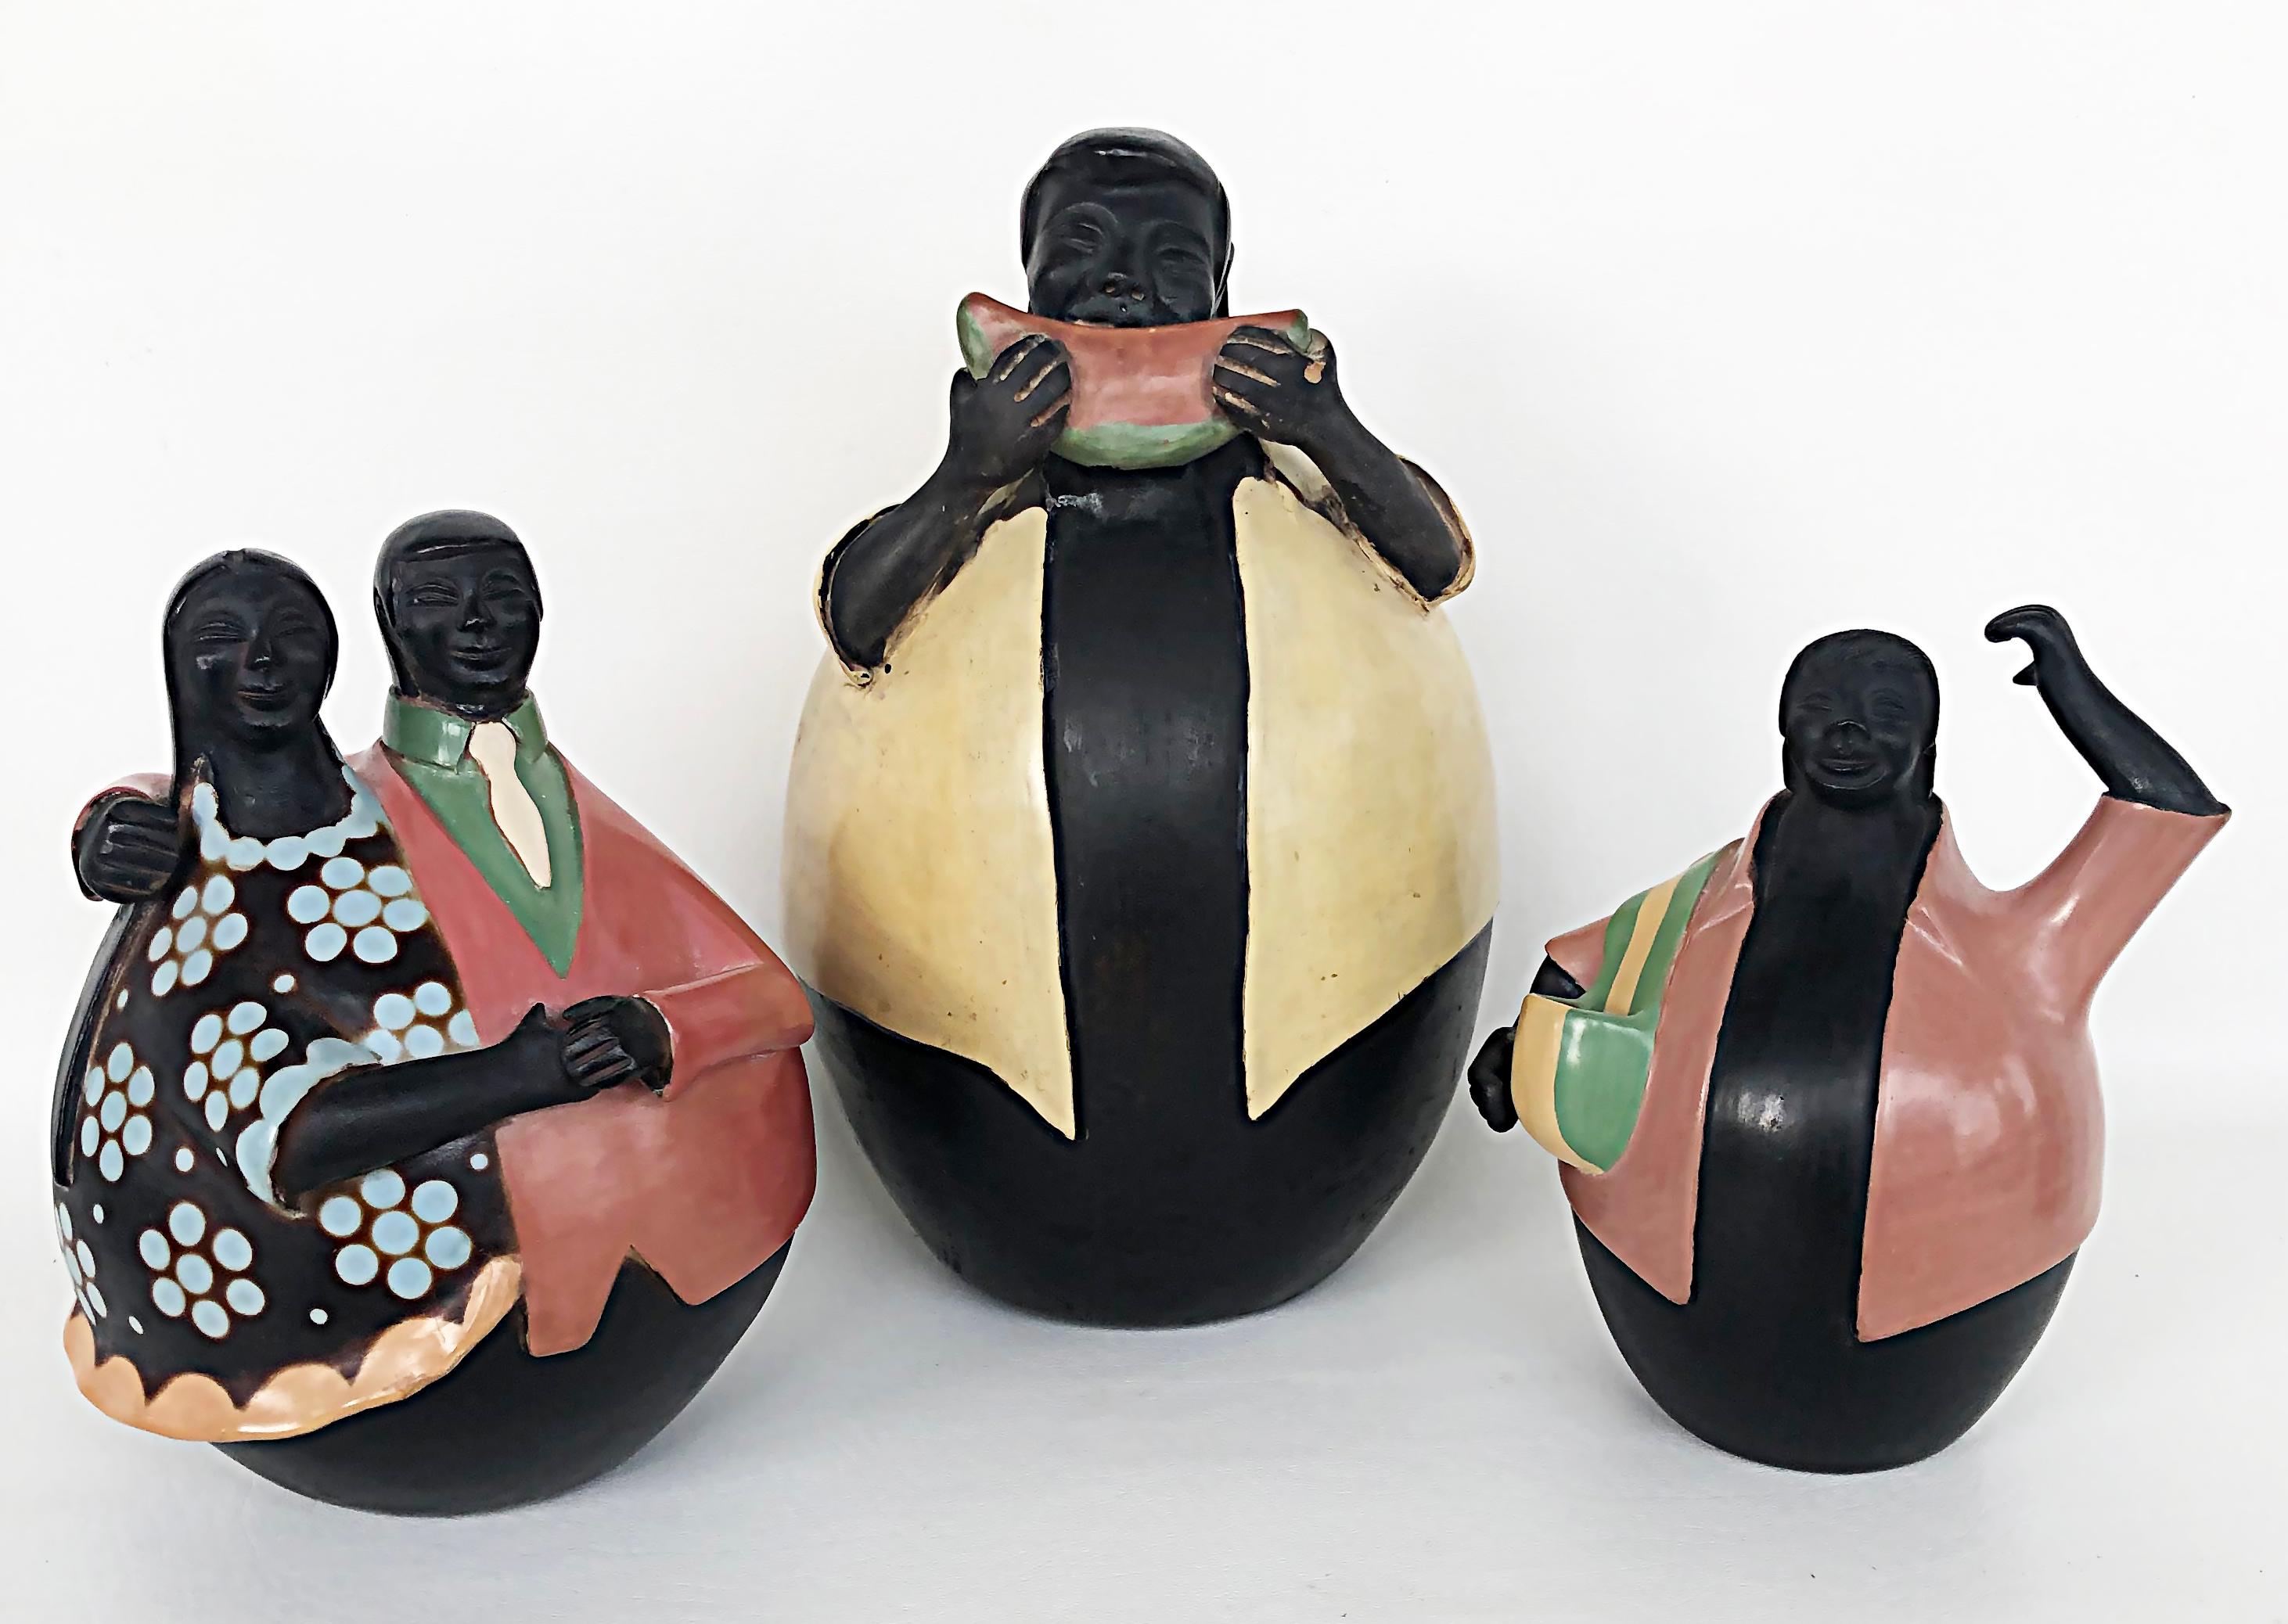 Manuel Sandoval Valez Latin American Folk Art Figurative Ceramic Sculpture 2